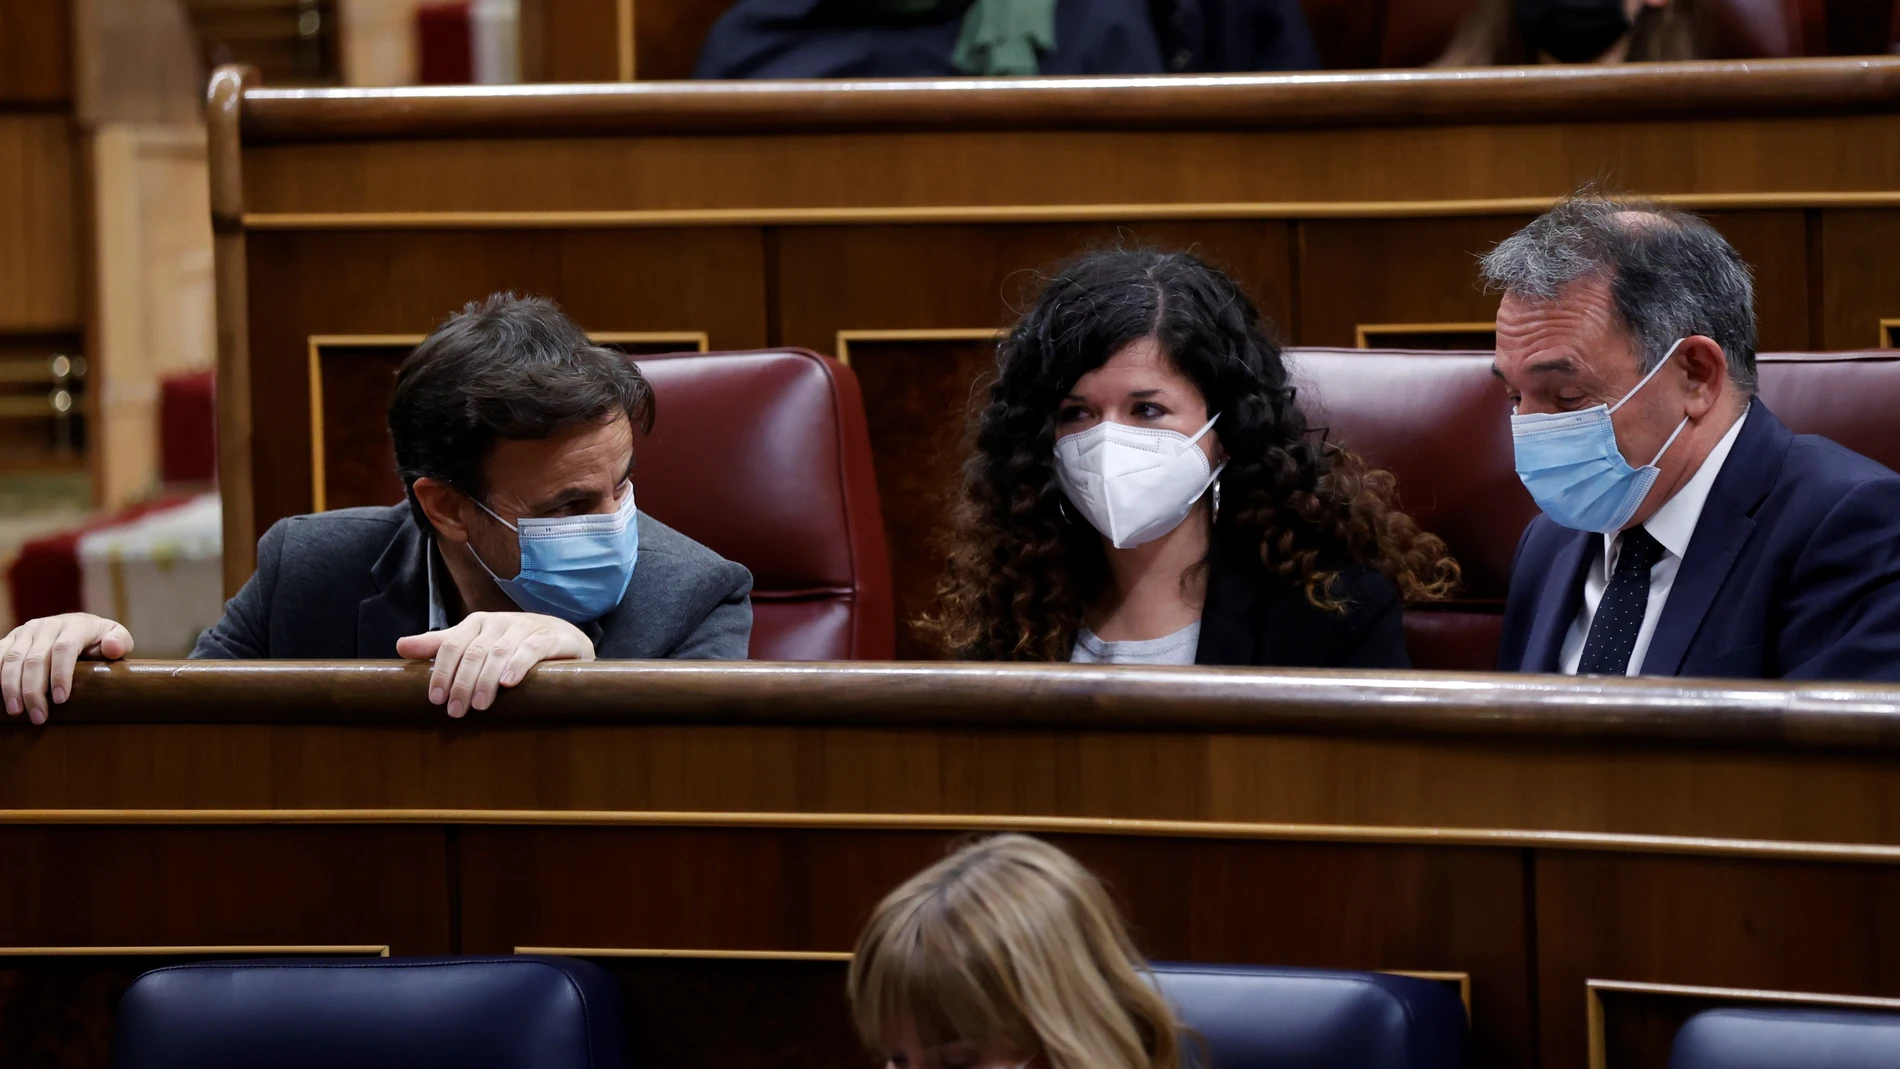 Los diputados de Unidas Podemos Jaume Asens, Sofía Fernández y Enrique Santiago en el Congreso de los Diputados